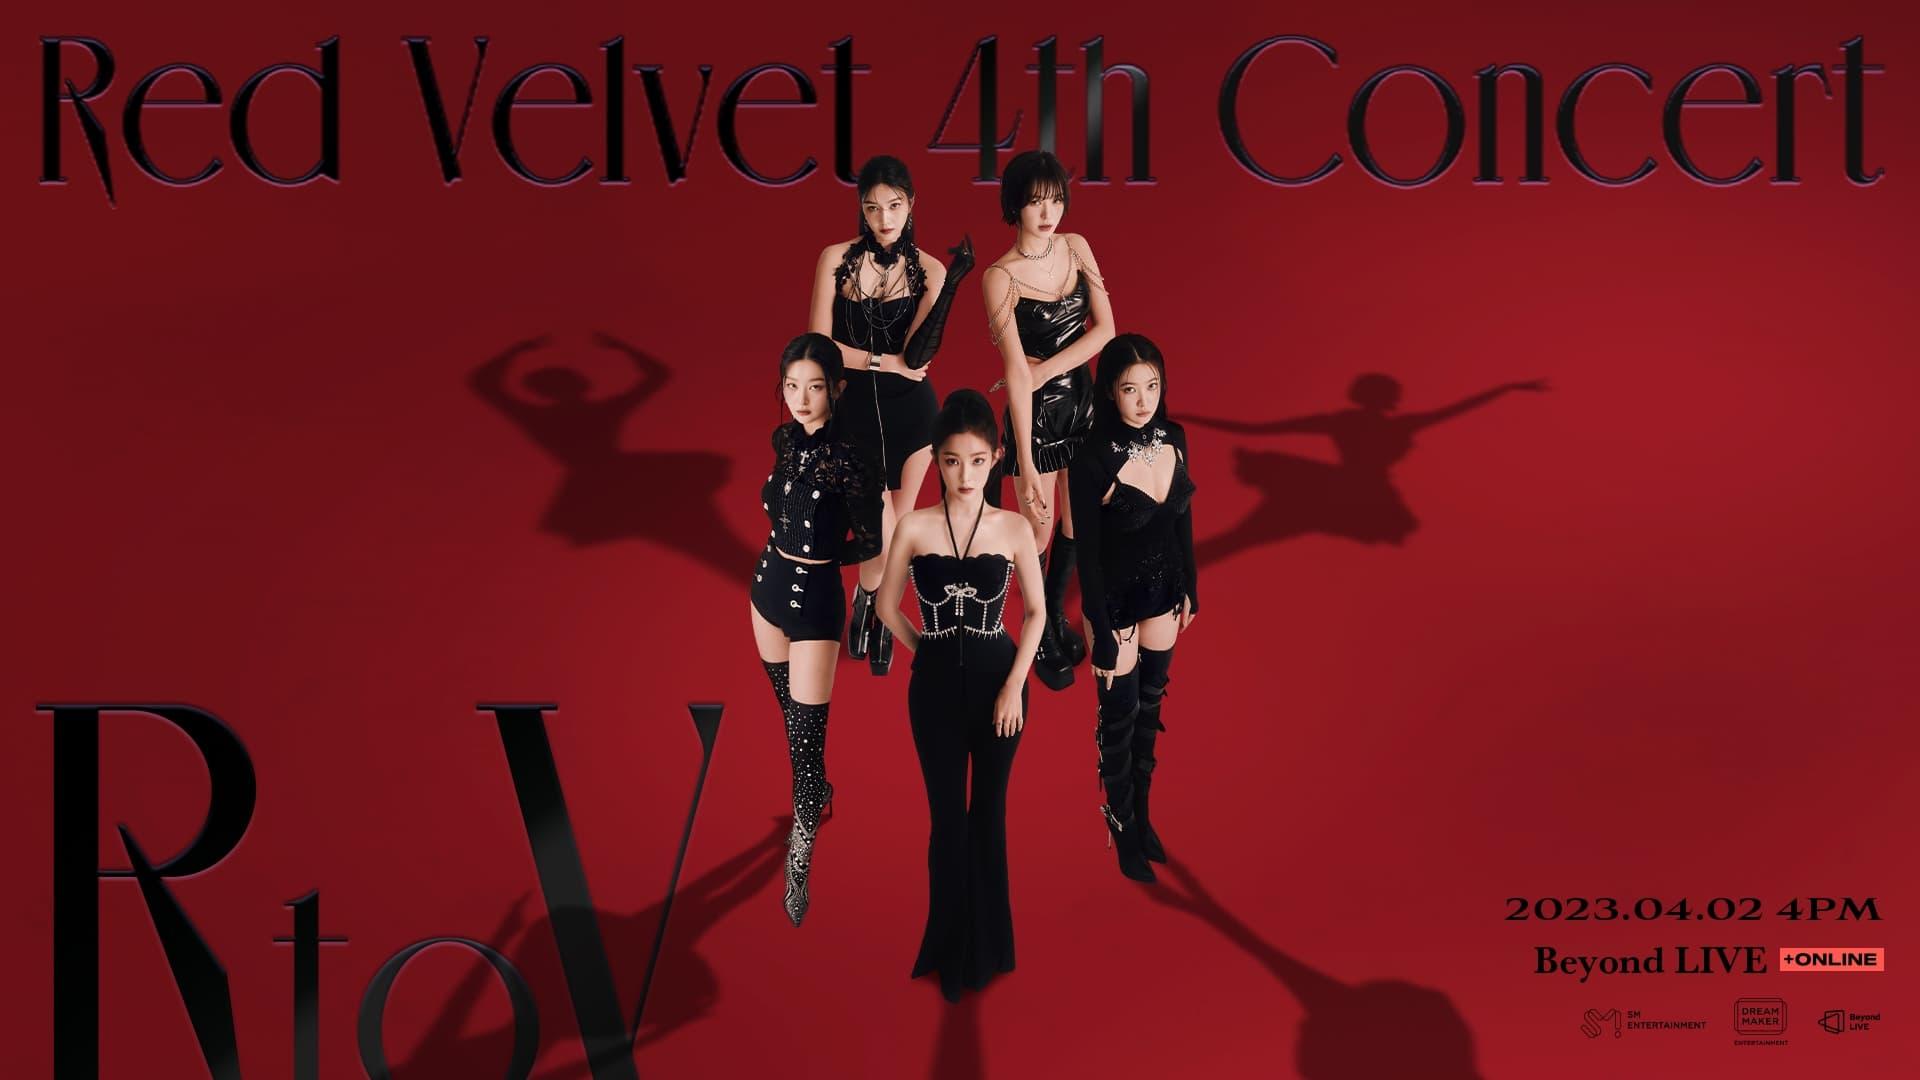 Red Velvet 4th Concert : R to V backdrop